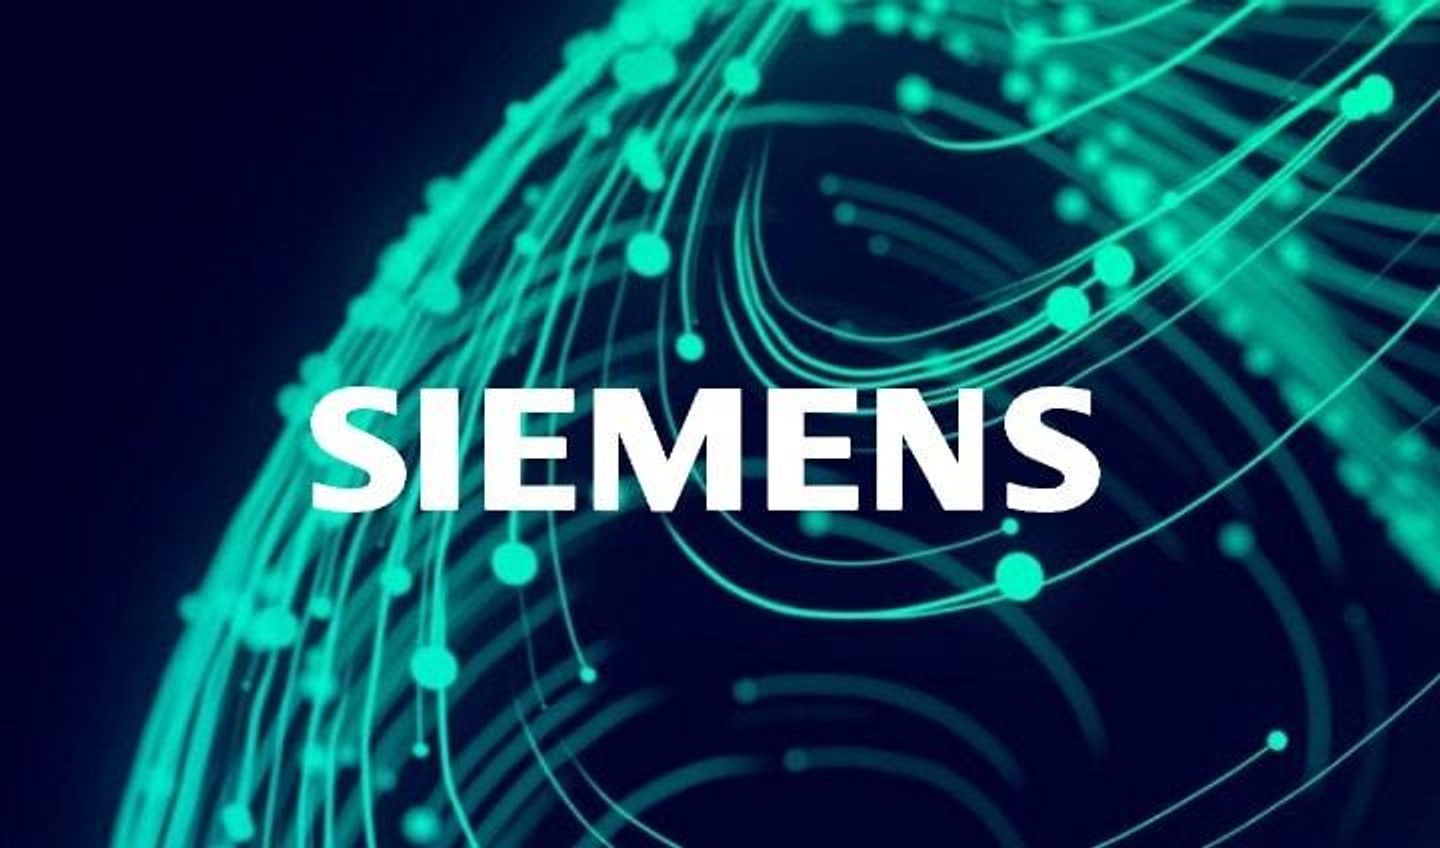 «Siemens покинет российский рынок из-за войны в Украине» — заявление немецкого концерна